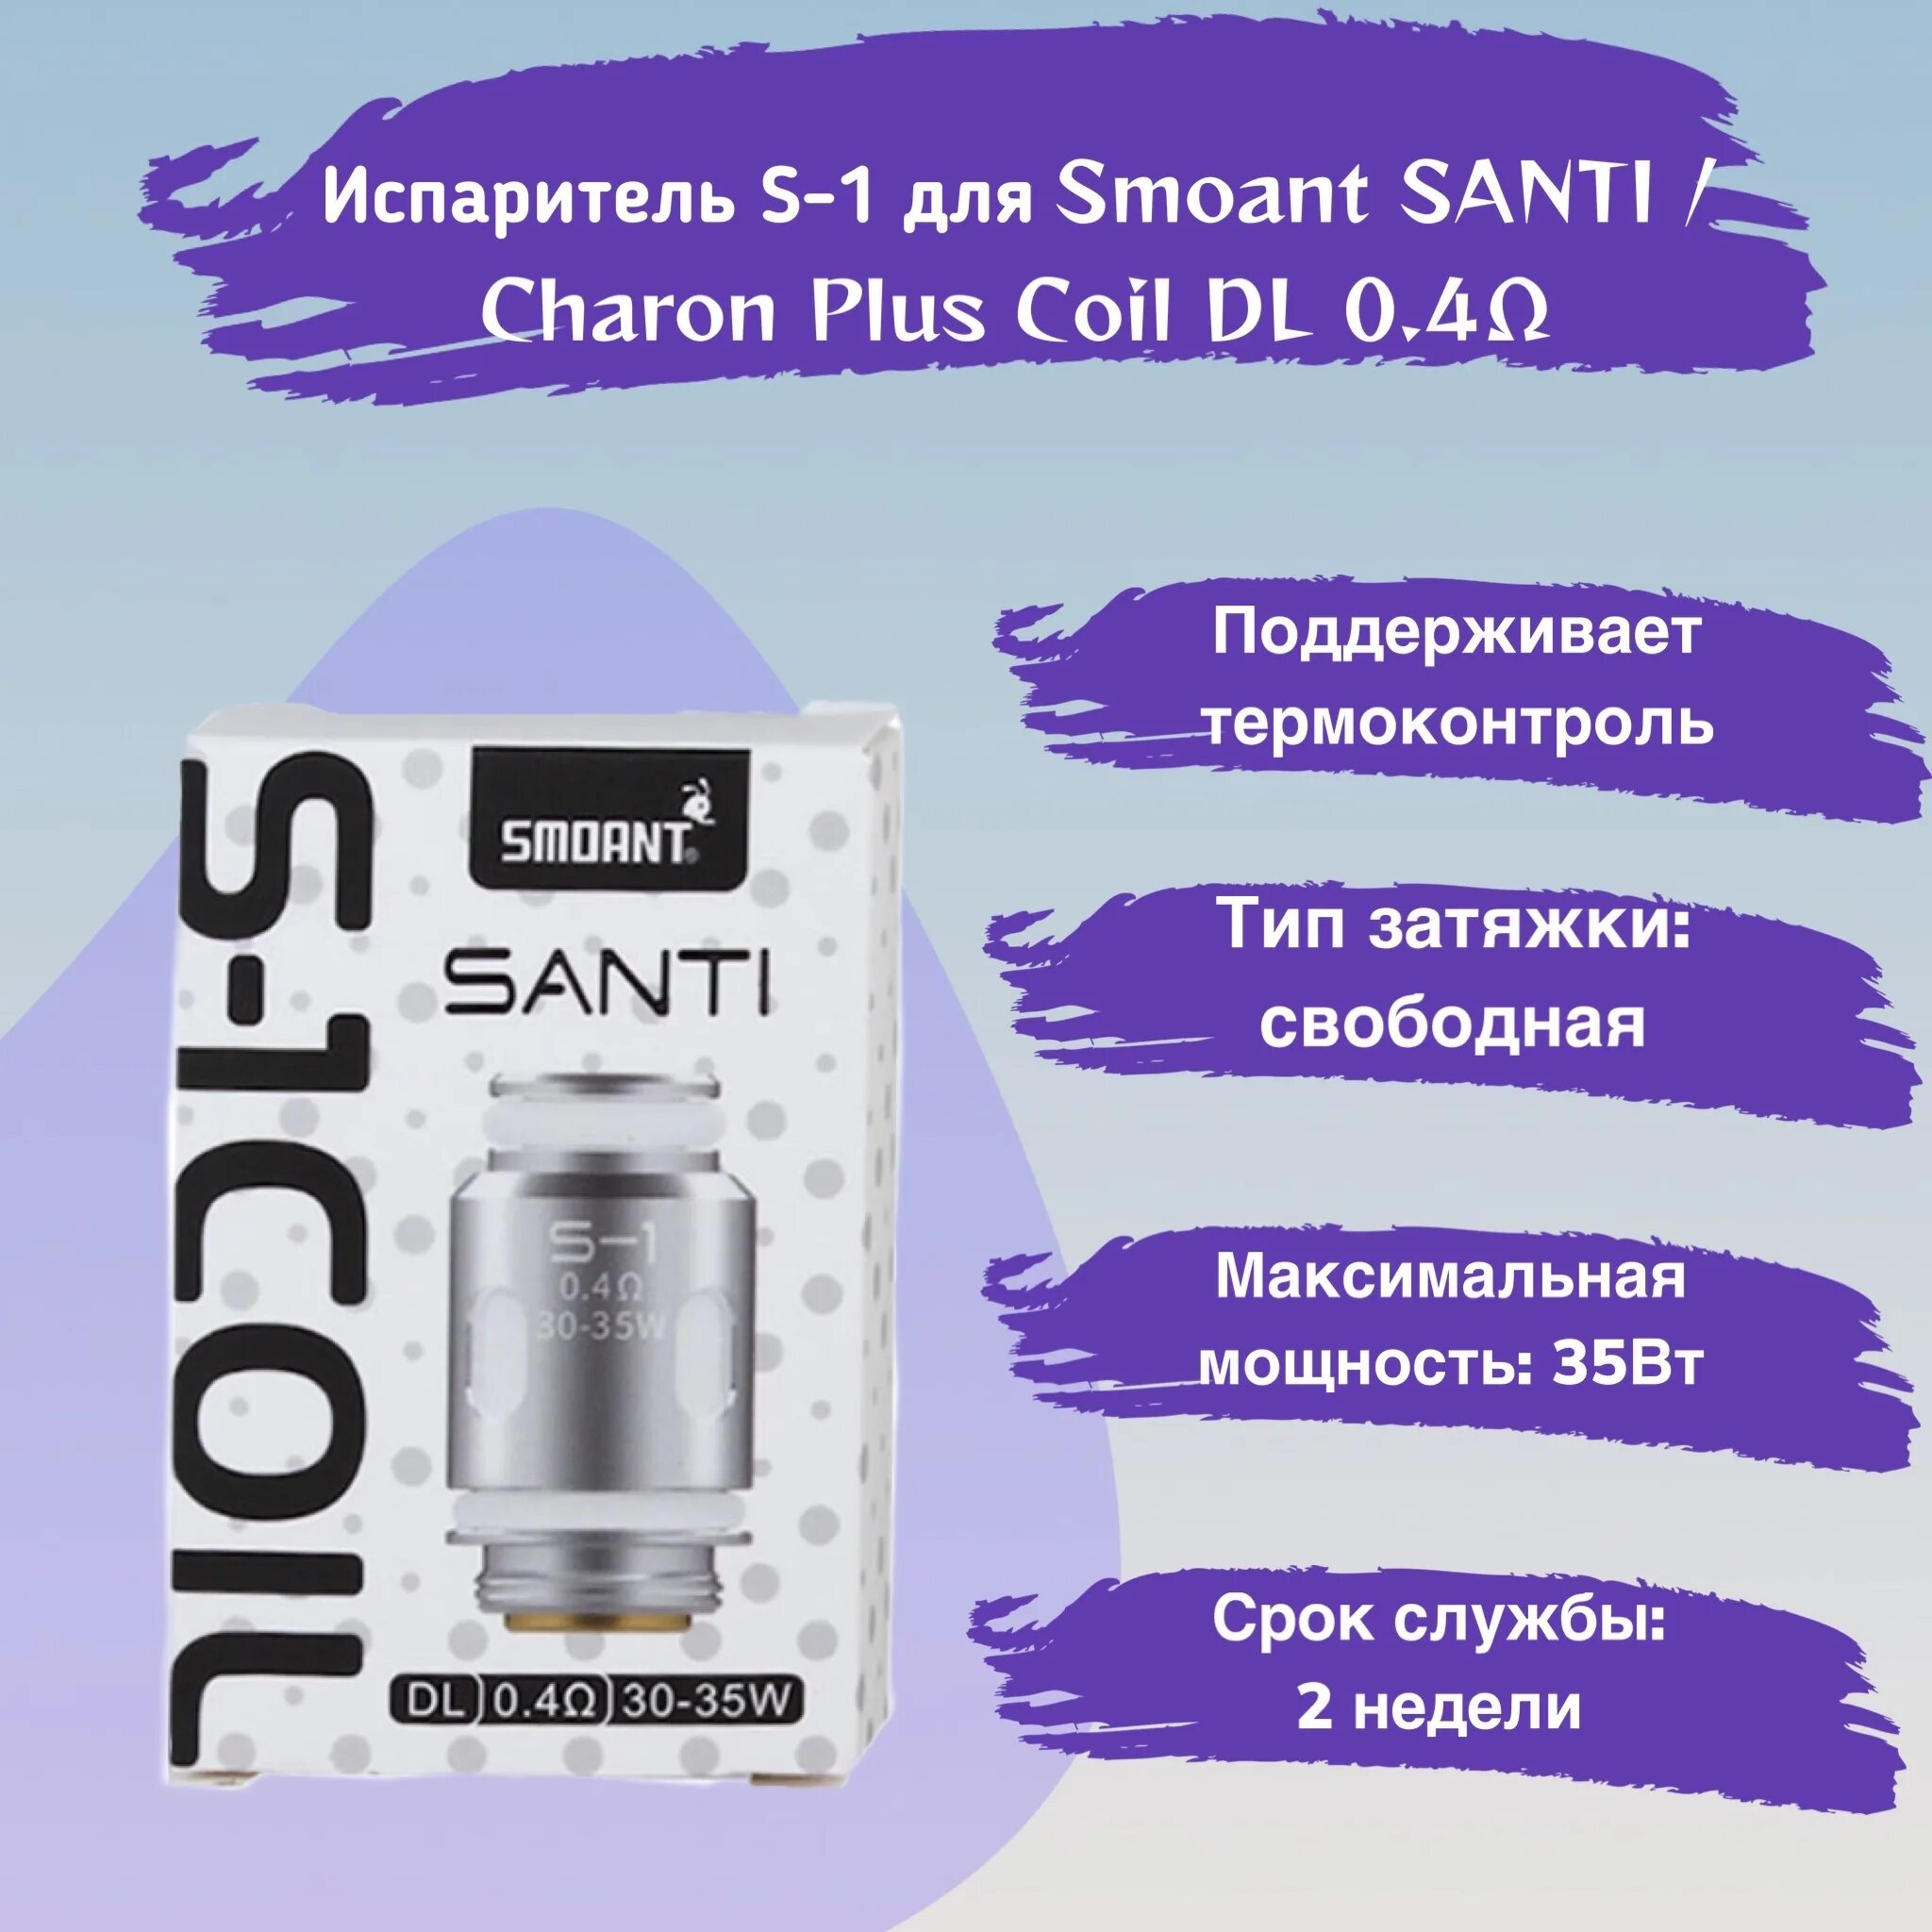 Charon baby plus испаритель купить. Испаритель Santi s1 Coil. Испаритель Smoant Santi s-3. Испаритель Charon Plus / Santi 0.4. Испаритель Smoant Santi/Charon Plus 1.1.